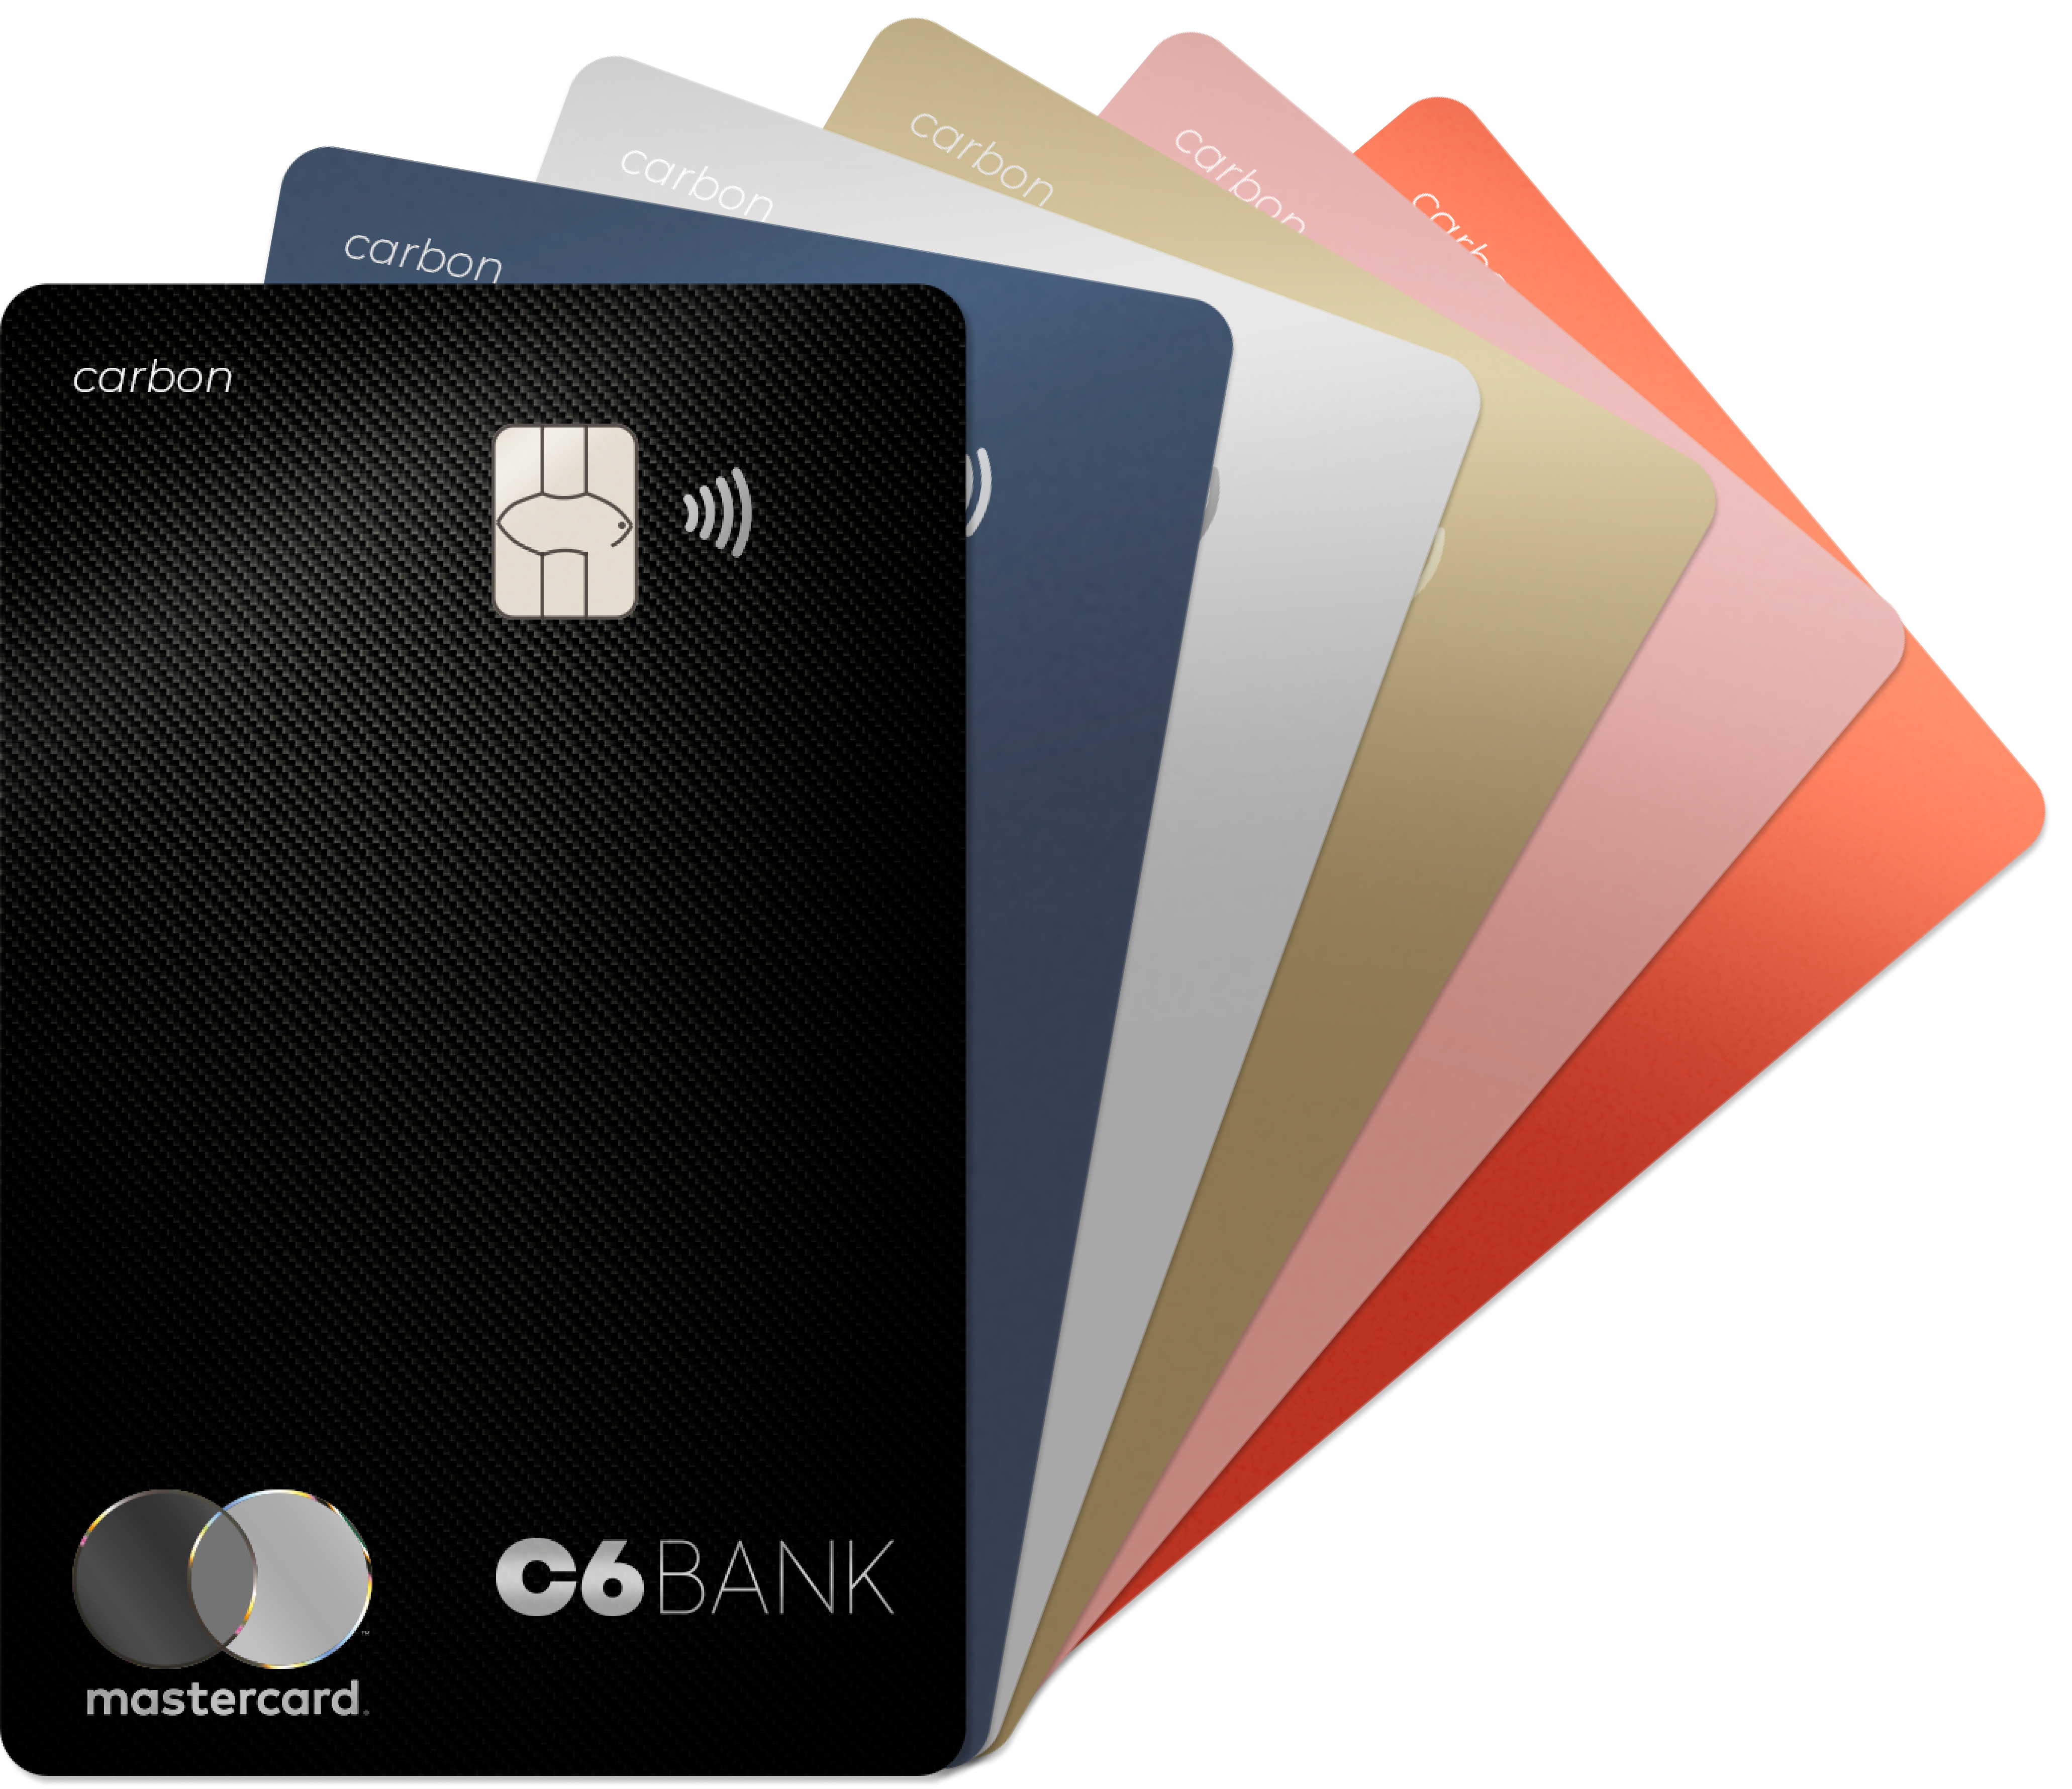 C6 Bank oferece até seis cartões adicionais sem anuidade | by C6 Bank | C6 Bank Notícias | Medium